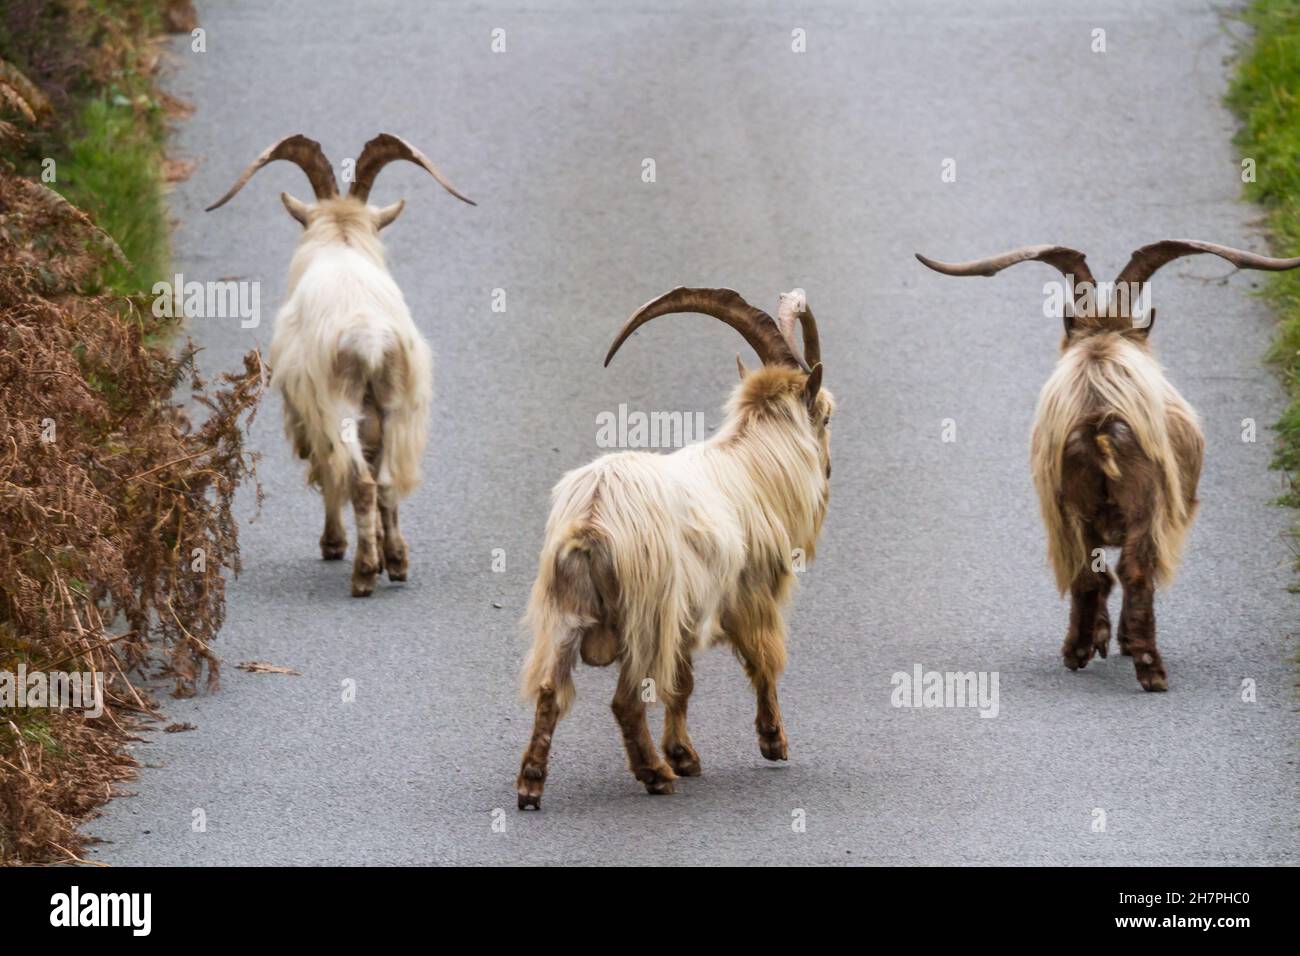 Trois d'une colonie de chèvres sauvages de montagne sauvages sauvages sur une voie.Cette espèce unique vit autour de Trefor et Llithfaen sur la péninsule de Llyn, au nord du pays de Galles. Banque D'Images